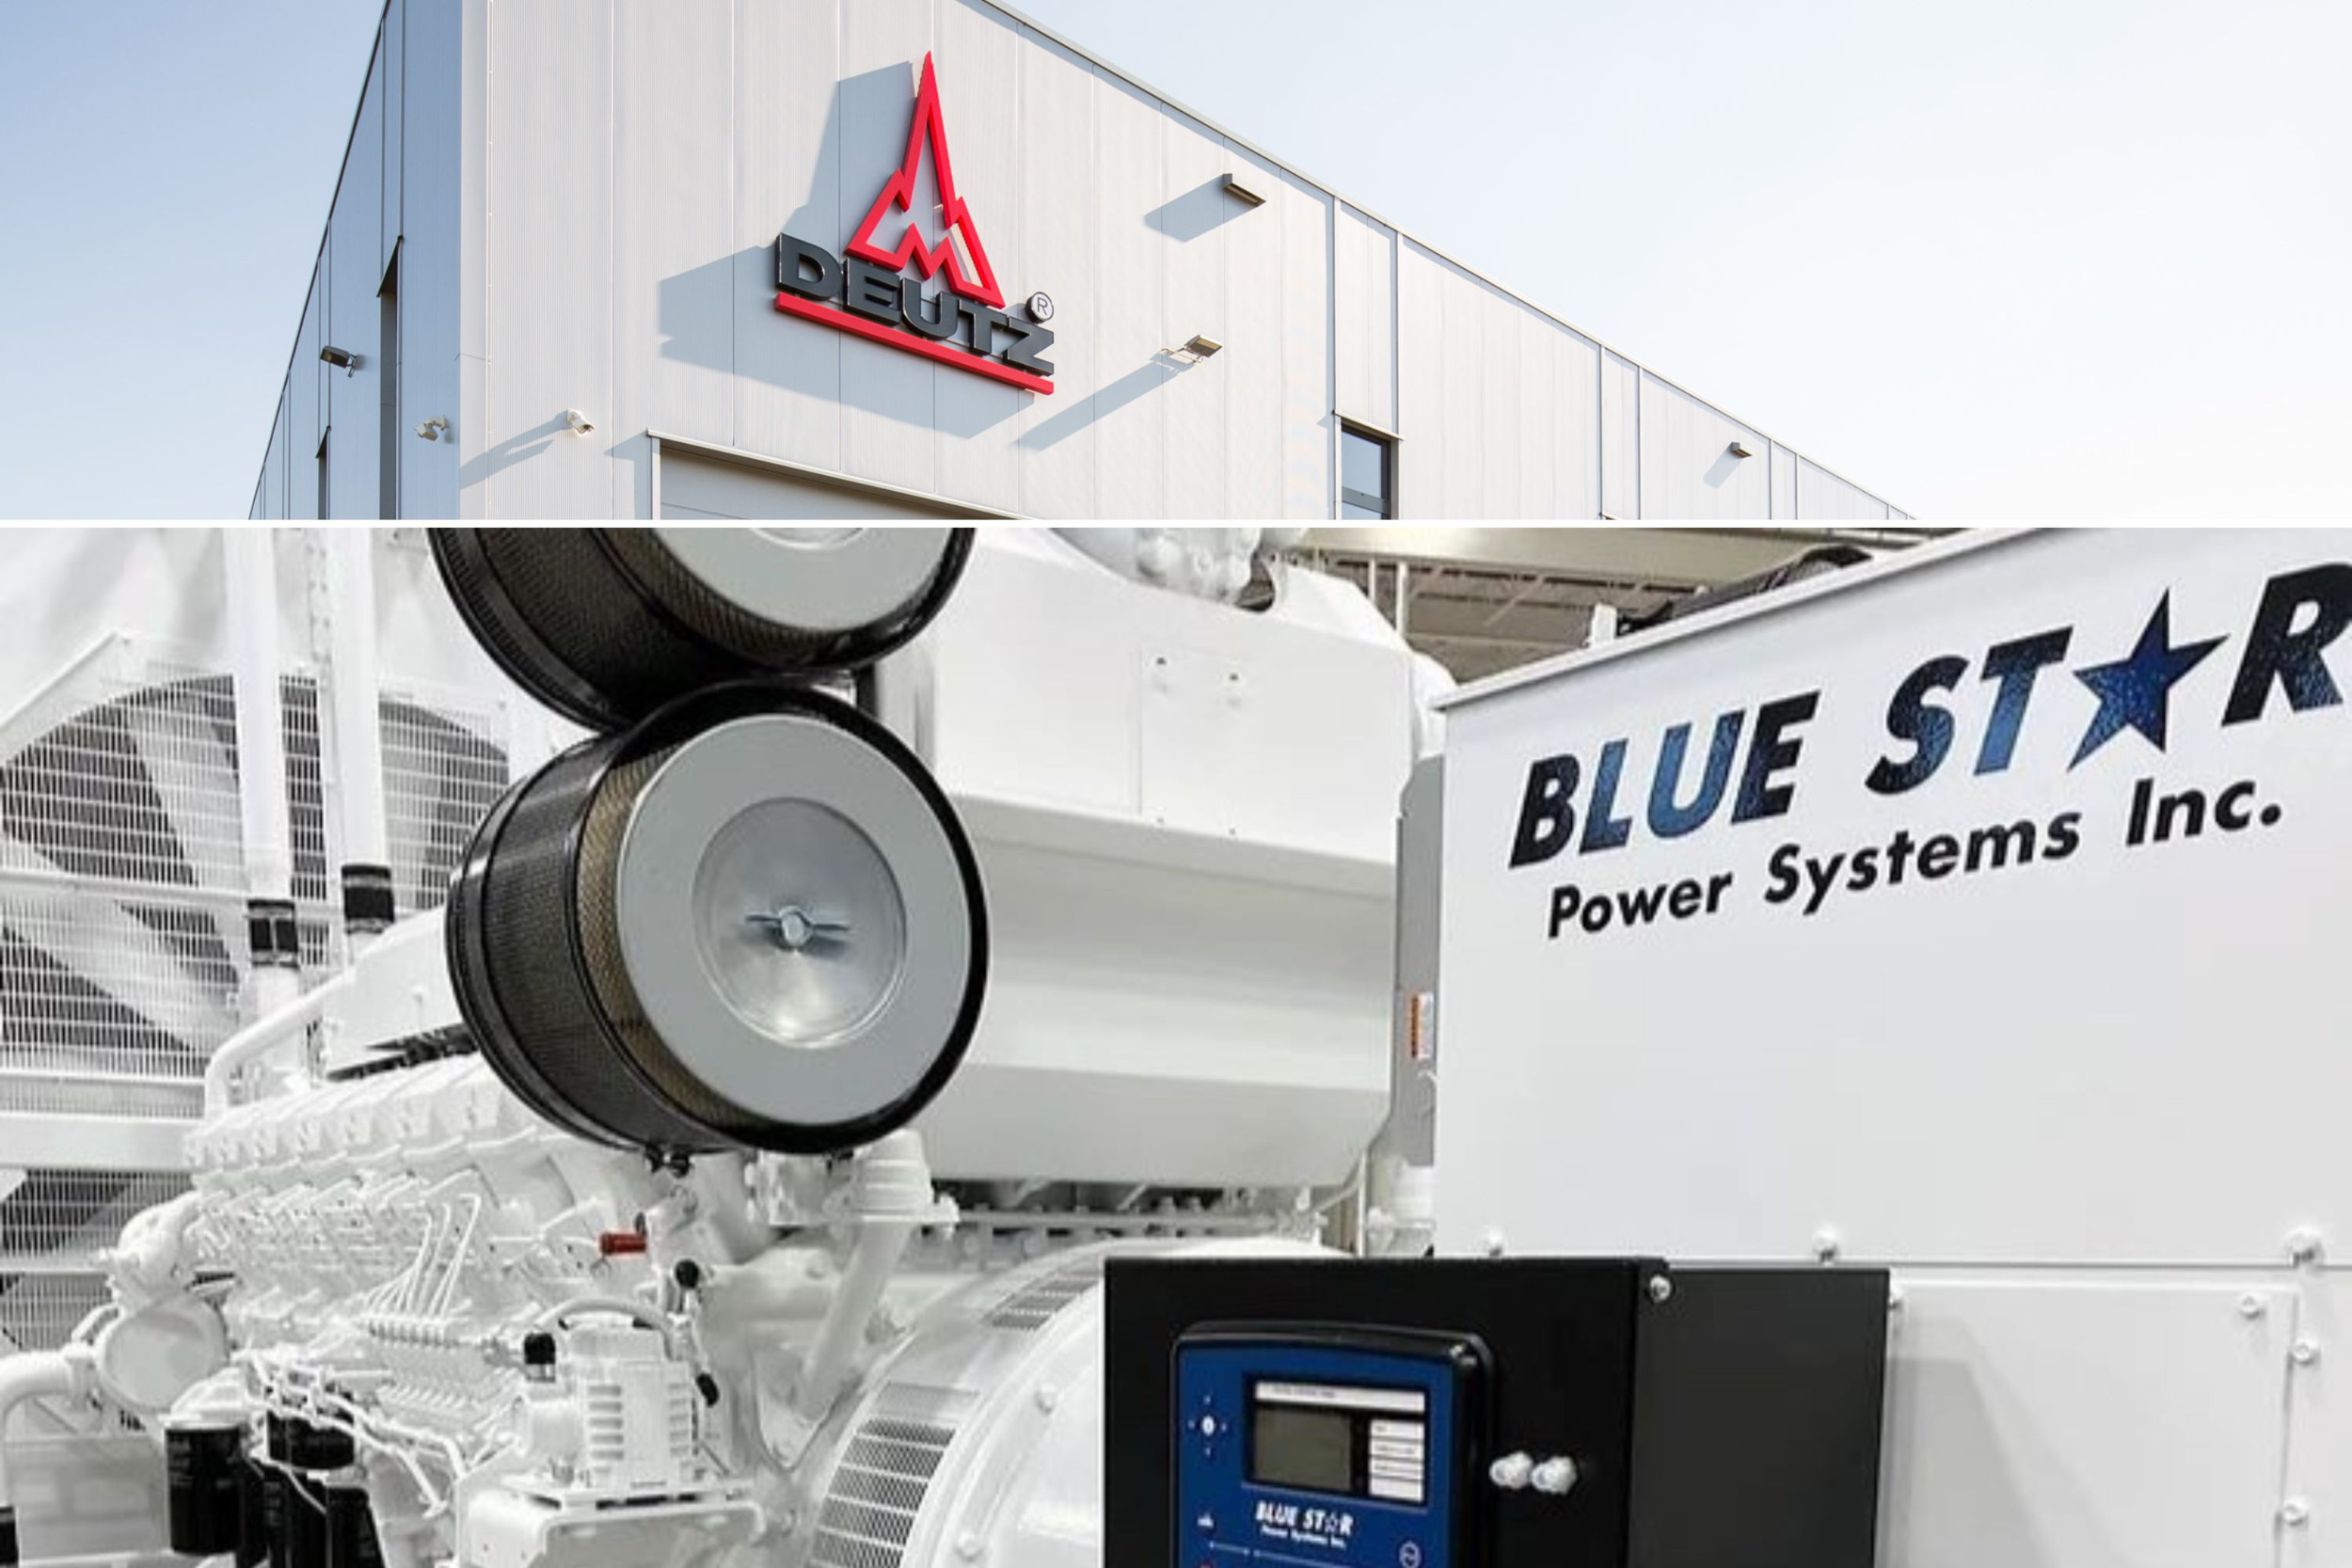 De Duitse motorenfabrikant Deutz AG verwacht een jaarlijkse extra omzet van 100 tot 150 miljoen dollar dankzij de overname van het Amerikaanse Blue Star Power Systems Inc. Blue Star Power Systems is een belangrijke speler op de Amerikaanse markt voor stroomaggregaten. – Foto: Deutz AG / Blue Star Power Systems Inc.